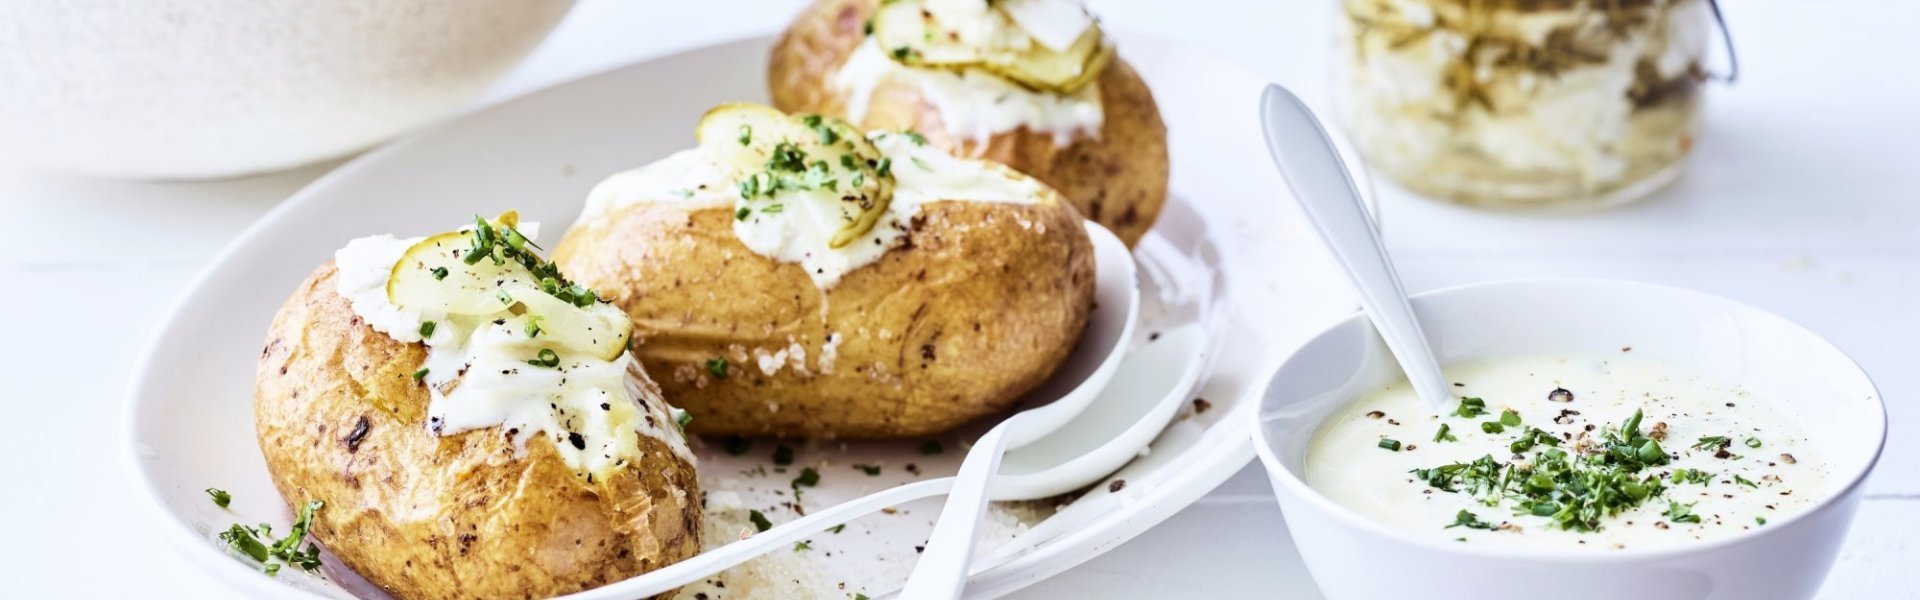 Gepofte aardappel met dressing